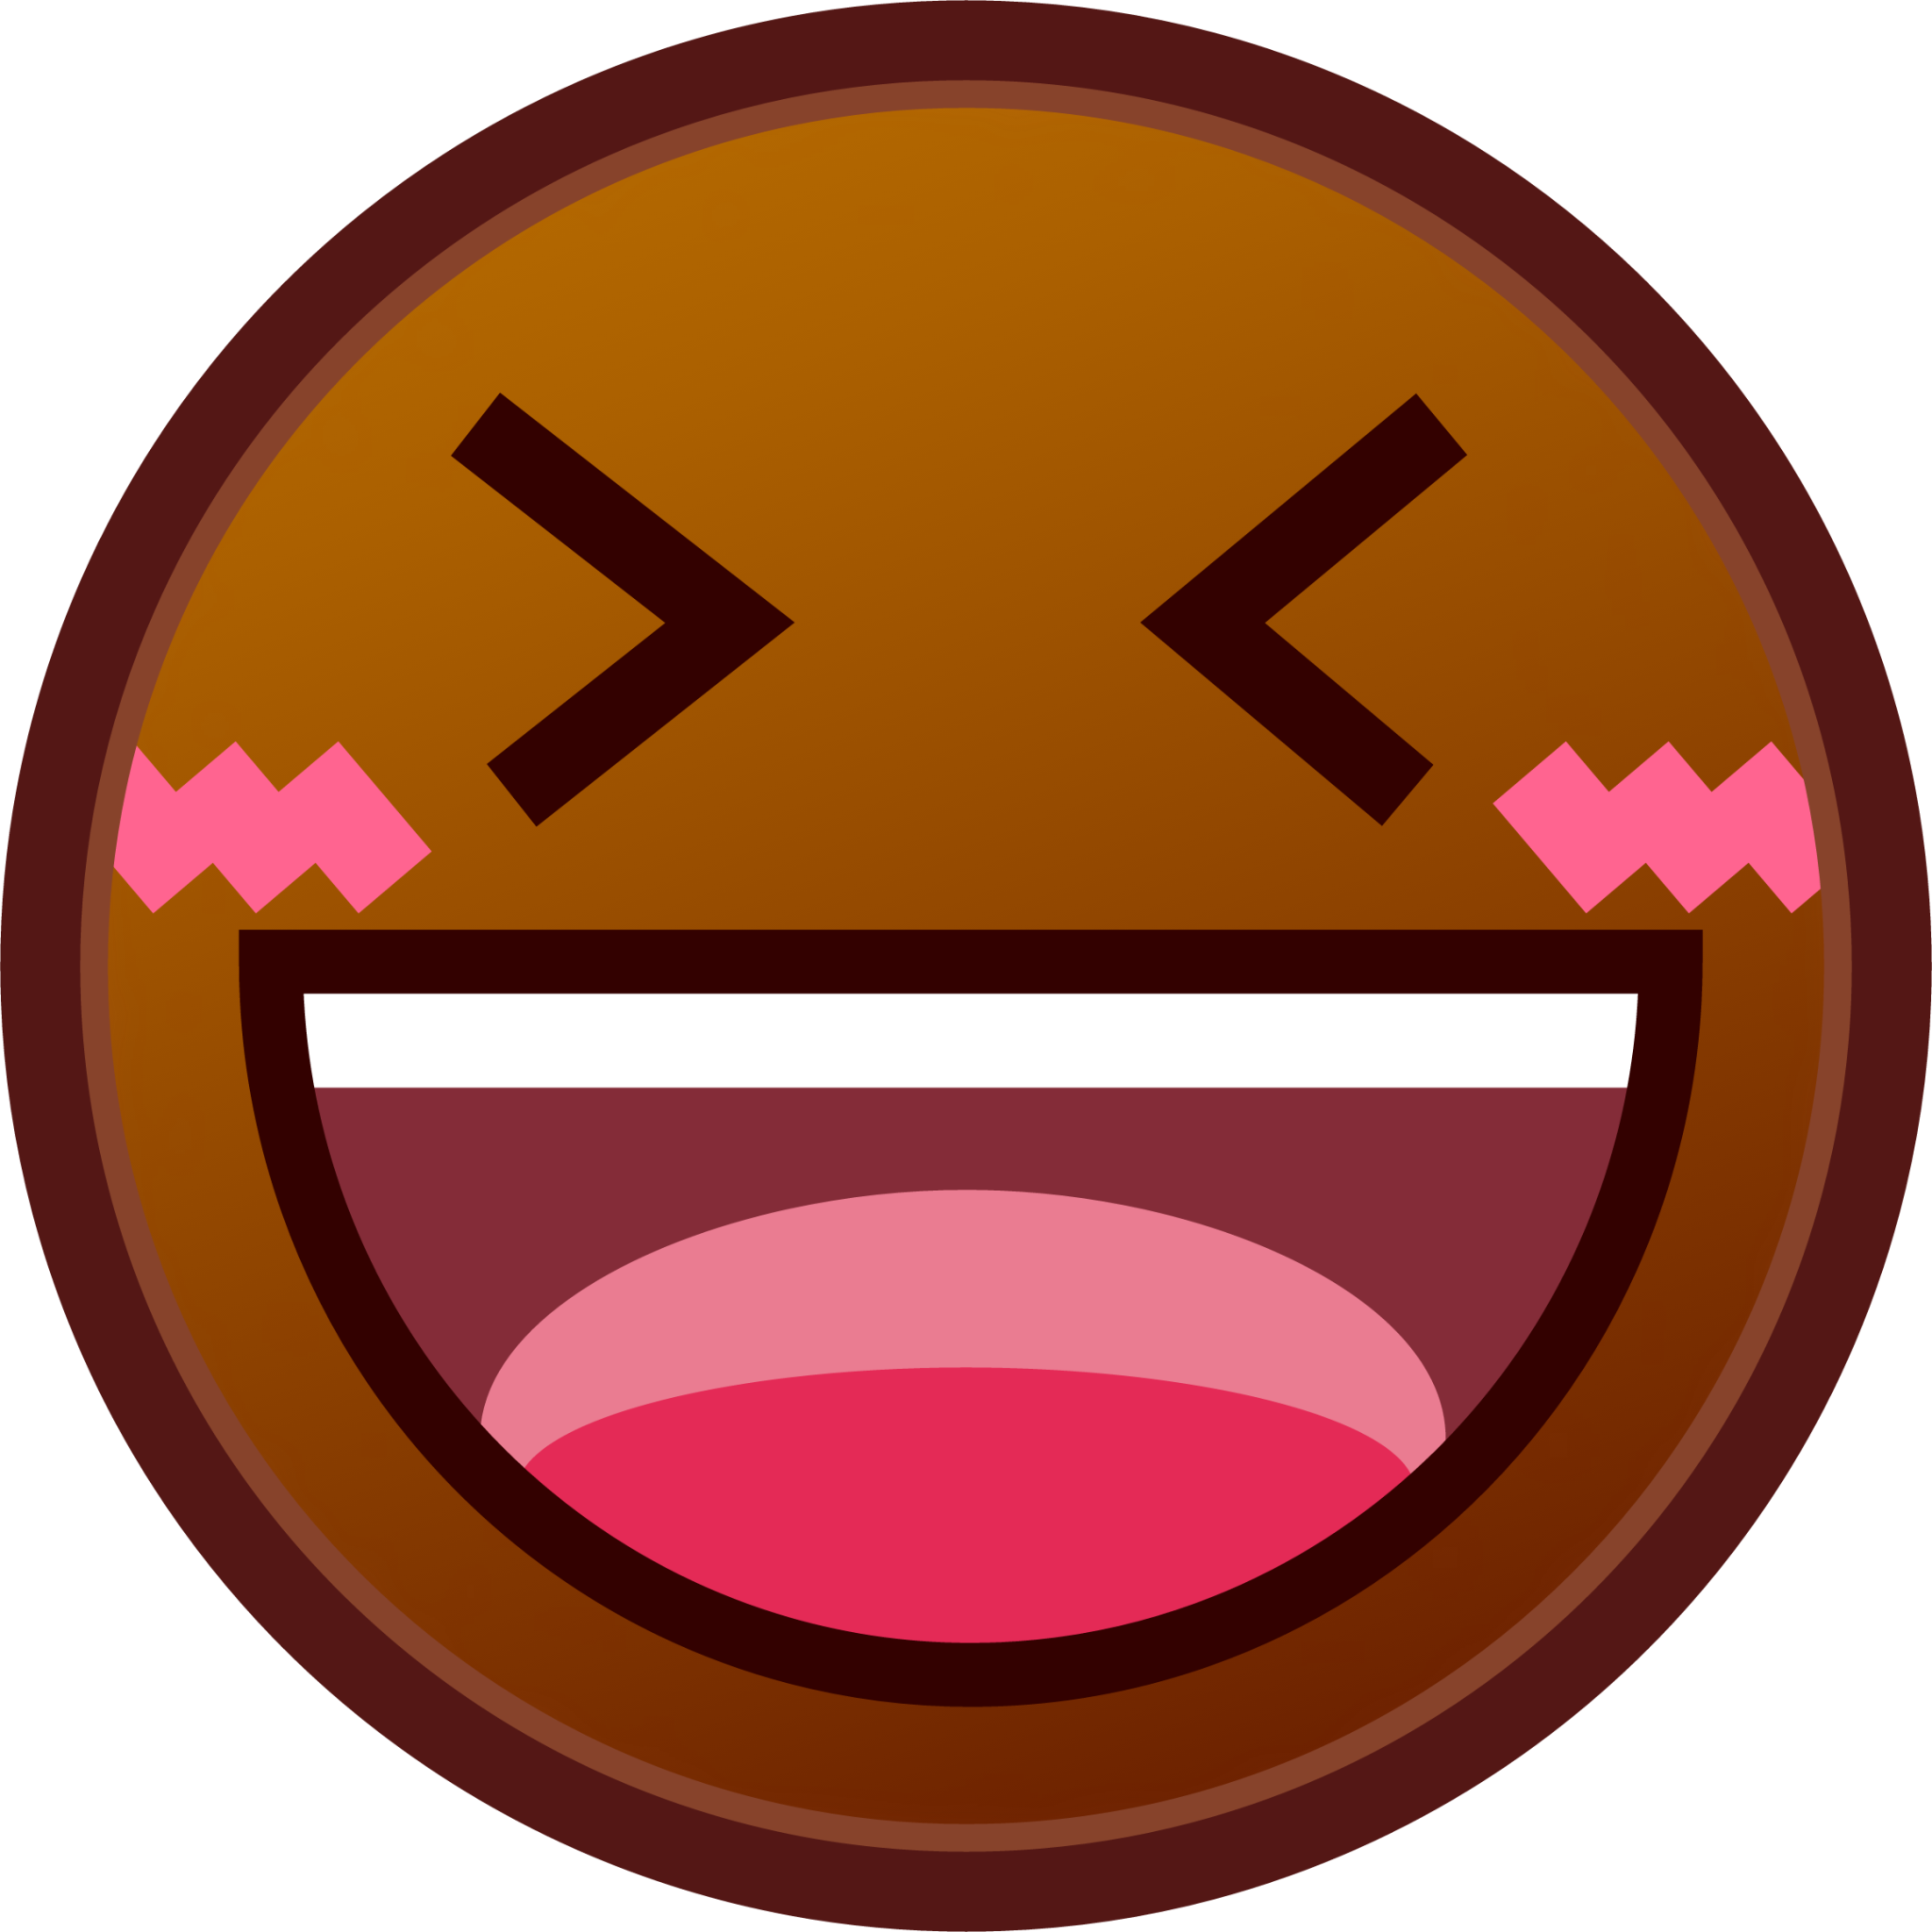 Emoji Laughing